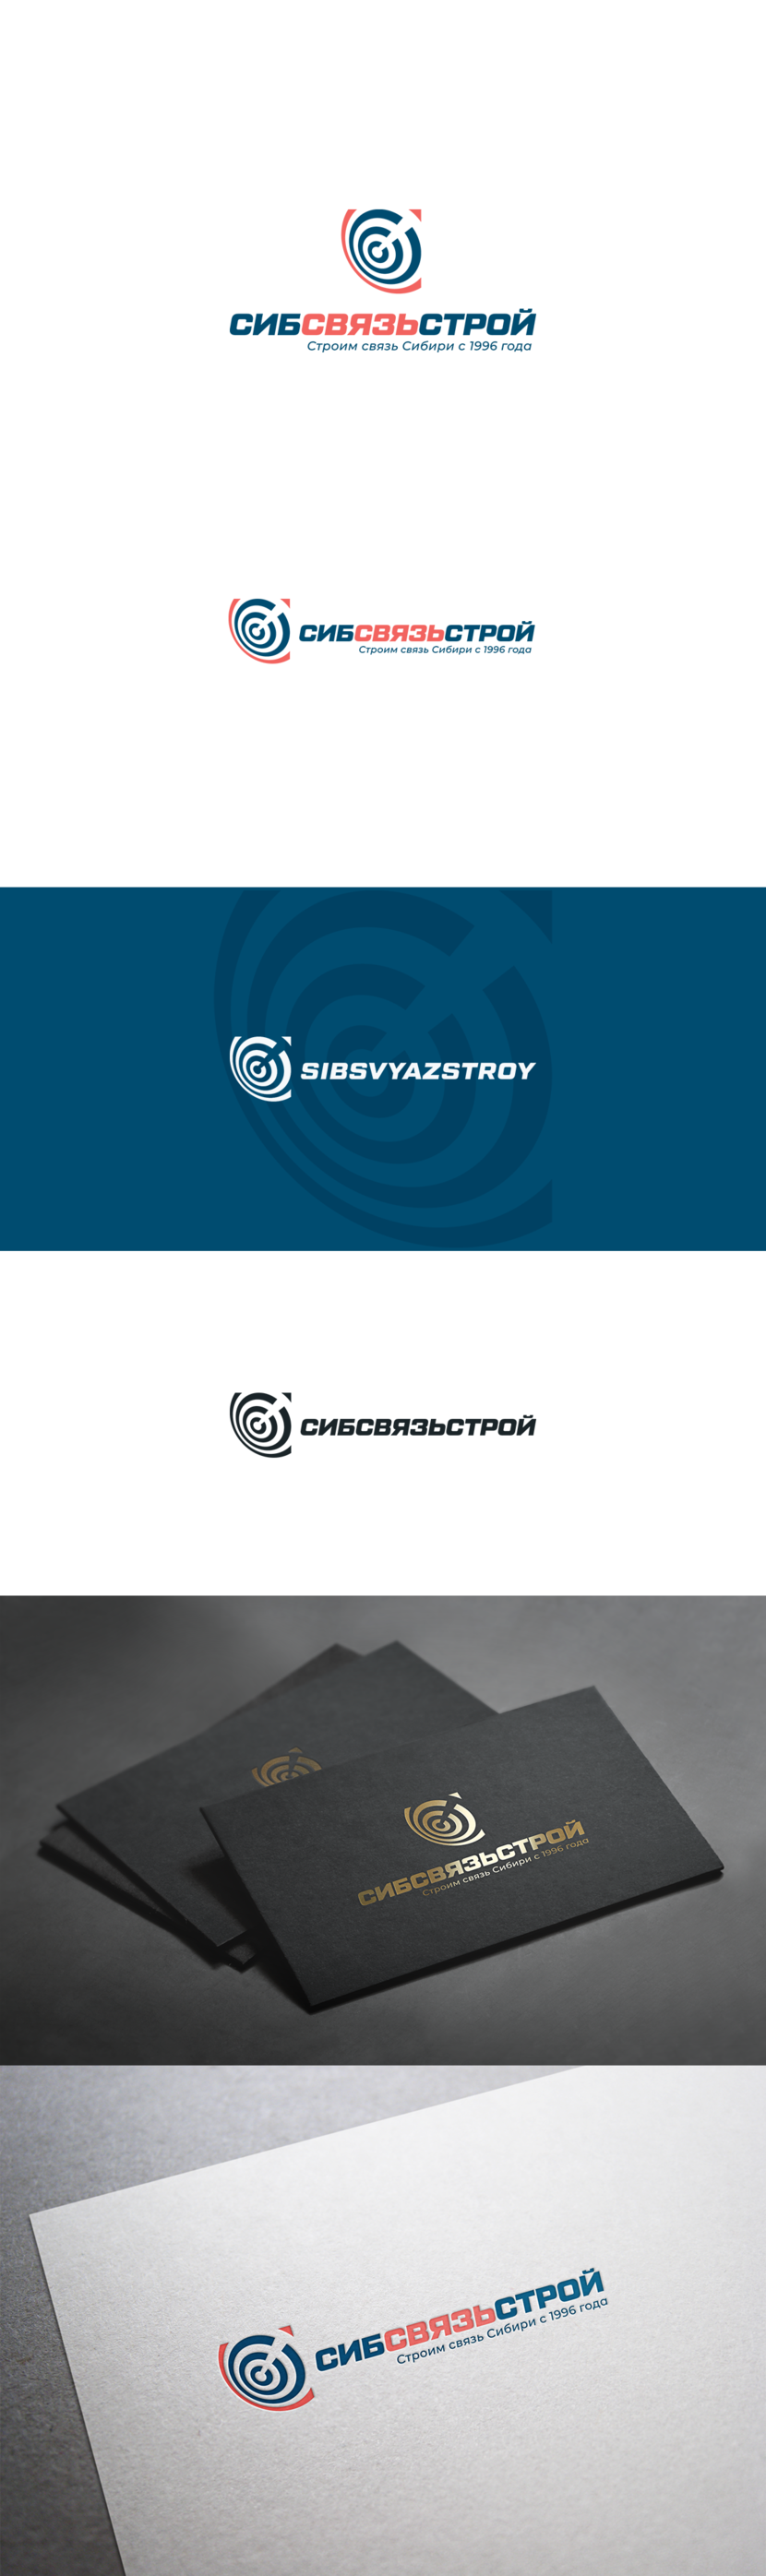 Вариант 2. - Разработка или ребрендинг существующего логотипа компании Сибсвязьстрой